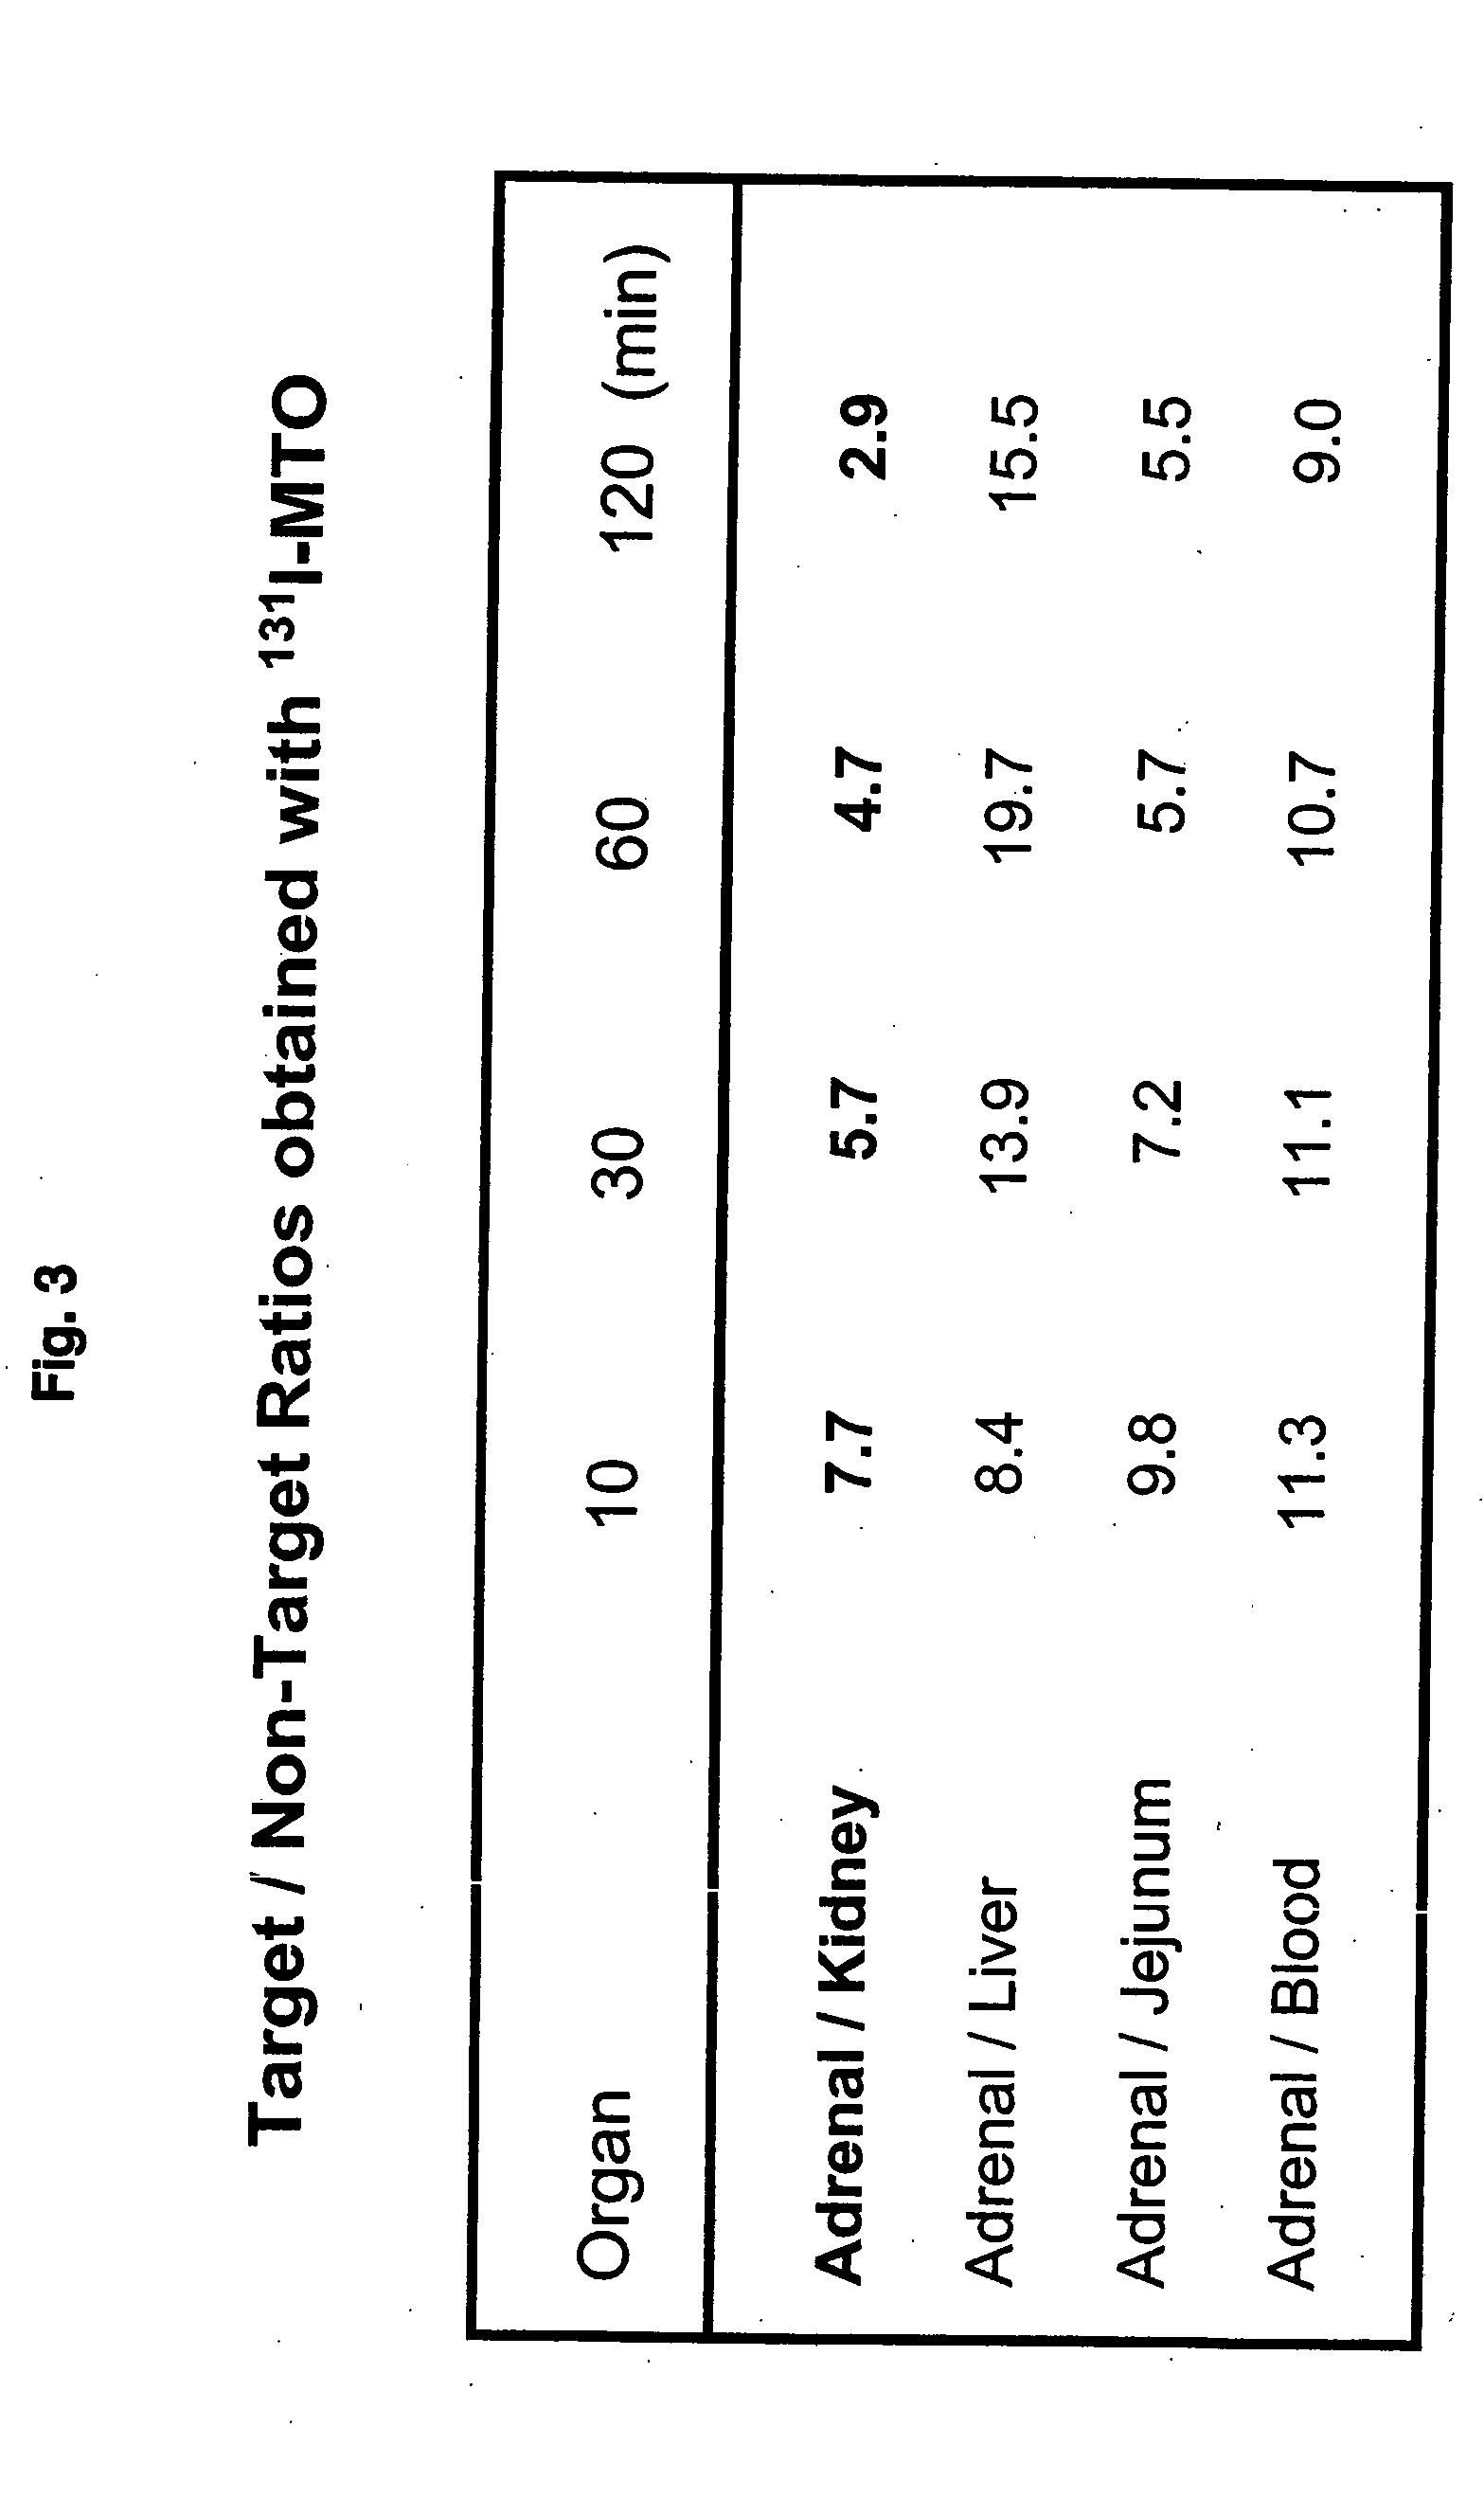 Radiolabelled phenylethyl imidazole caboxylic acid ester derivatives